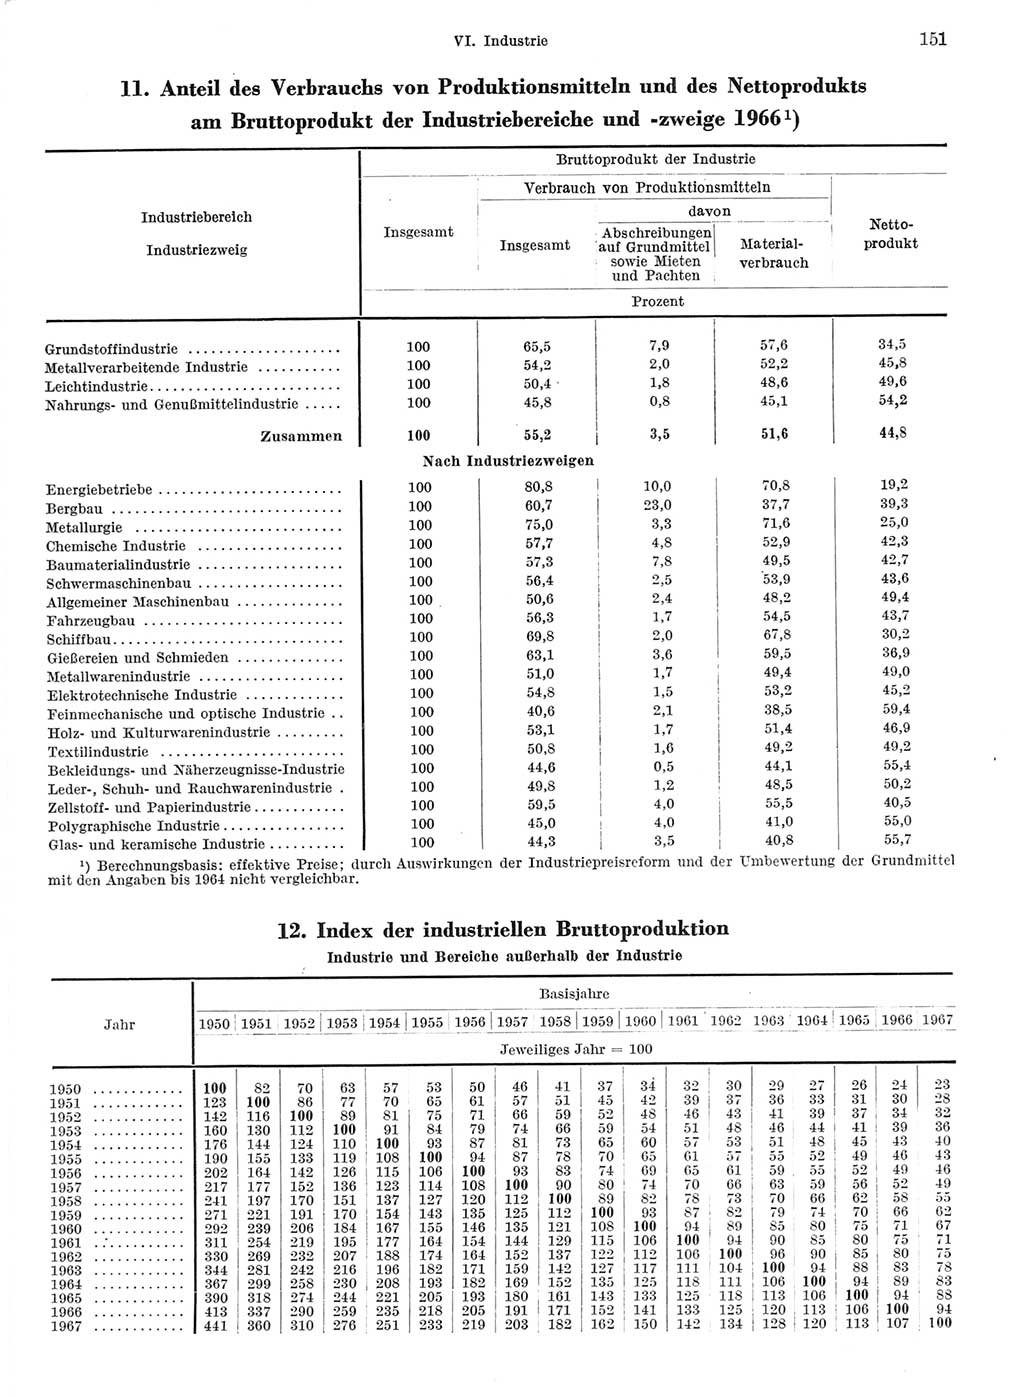 Statistisches Jahrbuch der Deutschen Demokratischen Republik (DDR) 1968, Seite 151 (Stat. Jb. DDR 1968, S. 151)